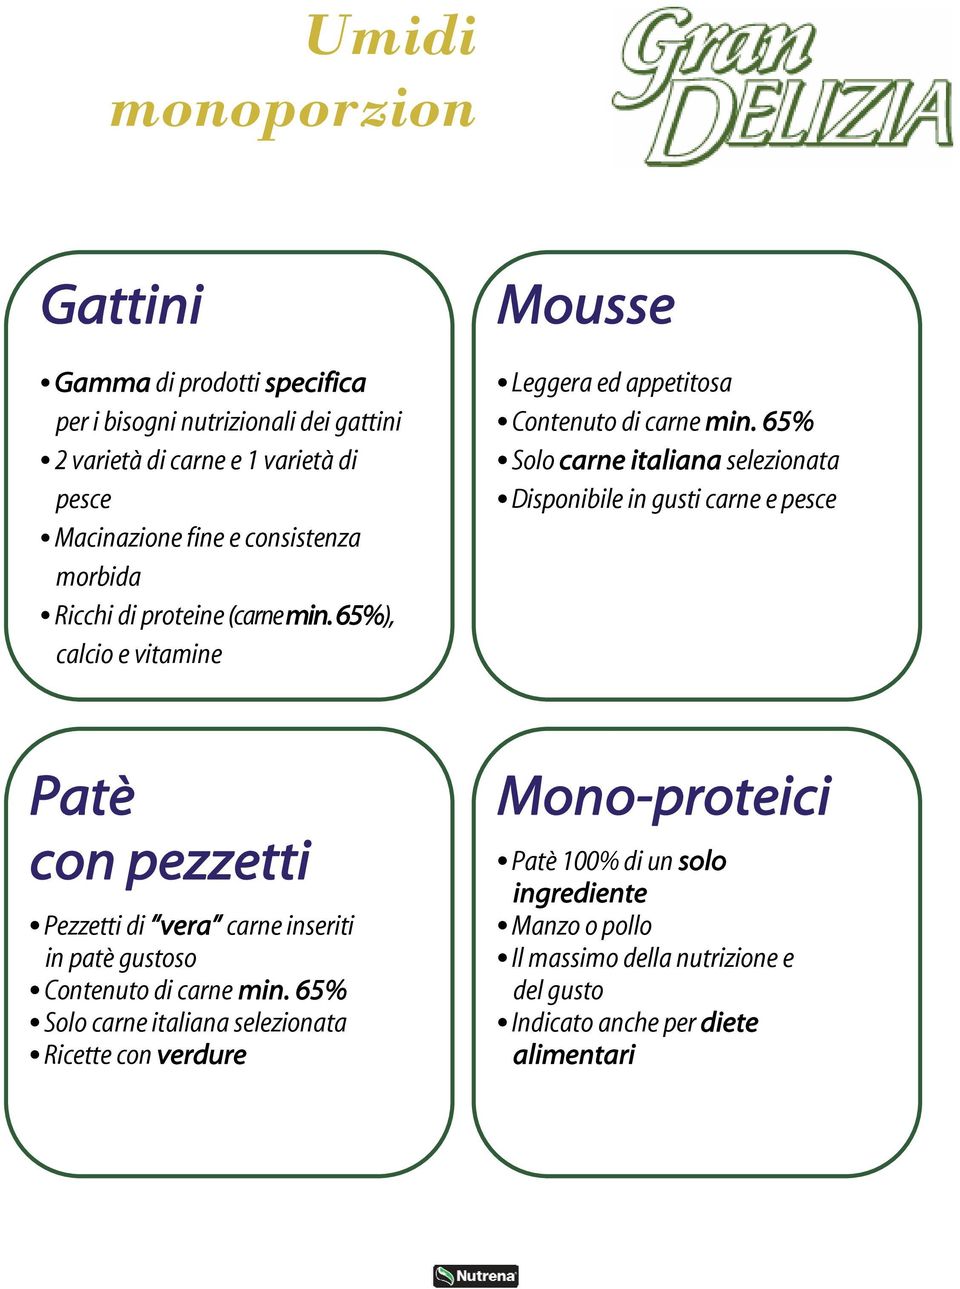 65% Solo carne italiana selezionata Disponibile in gusti carne e pesce Patè con pezzetti Pezzetti di vera carne inseriti in patè gustoso Contenuto di